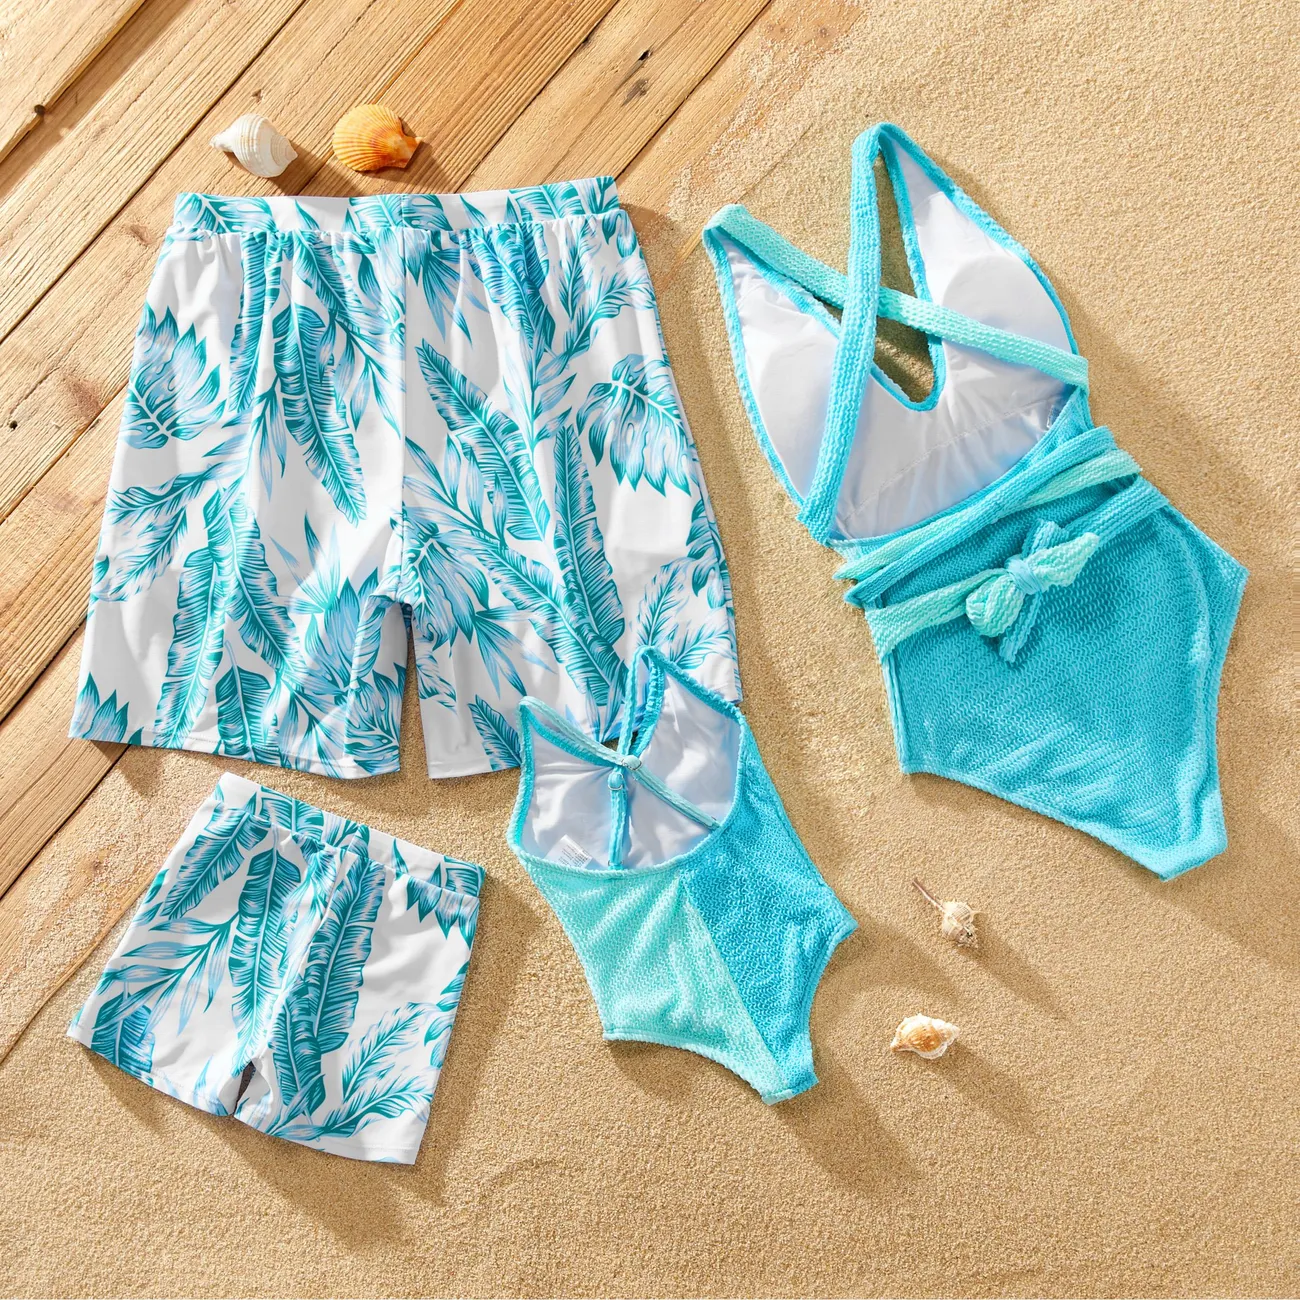 ملابس سباحة من قطعة واحدة متطابقة مع ألوان متطابقة وربطة عنق ذاتيًا وسراويل سباحة مطبوعة بأوراق النخيل بالكامل أزرق أخضر big image 1